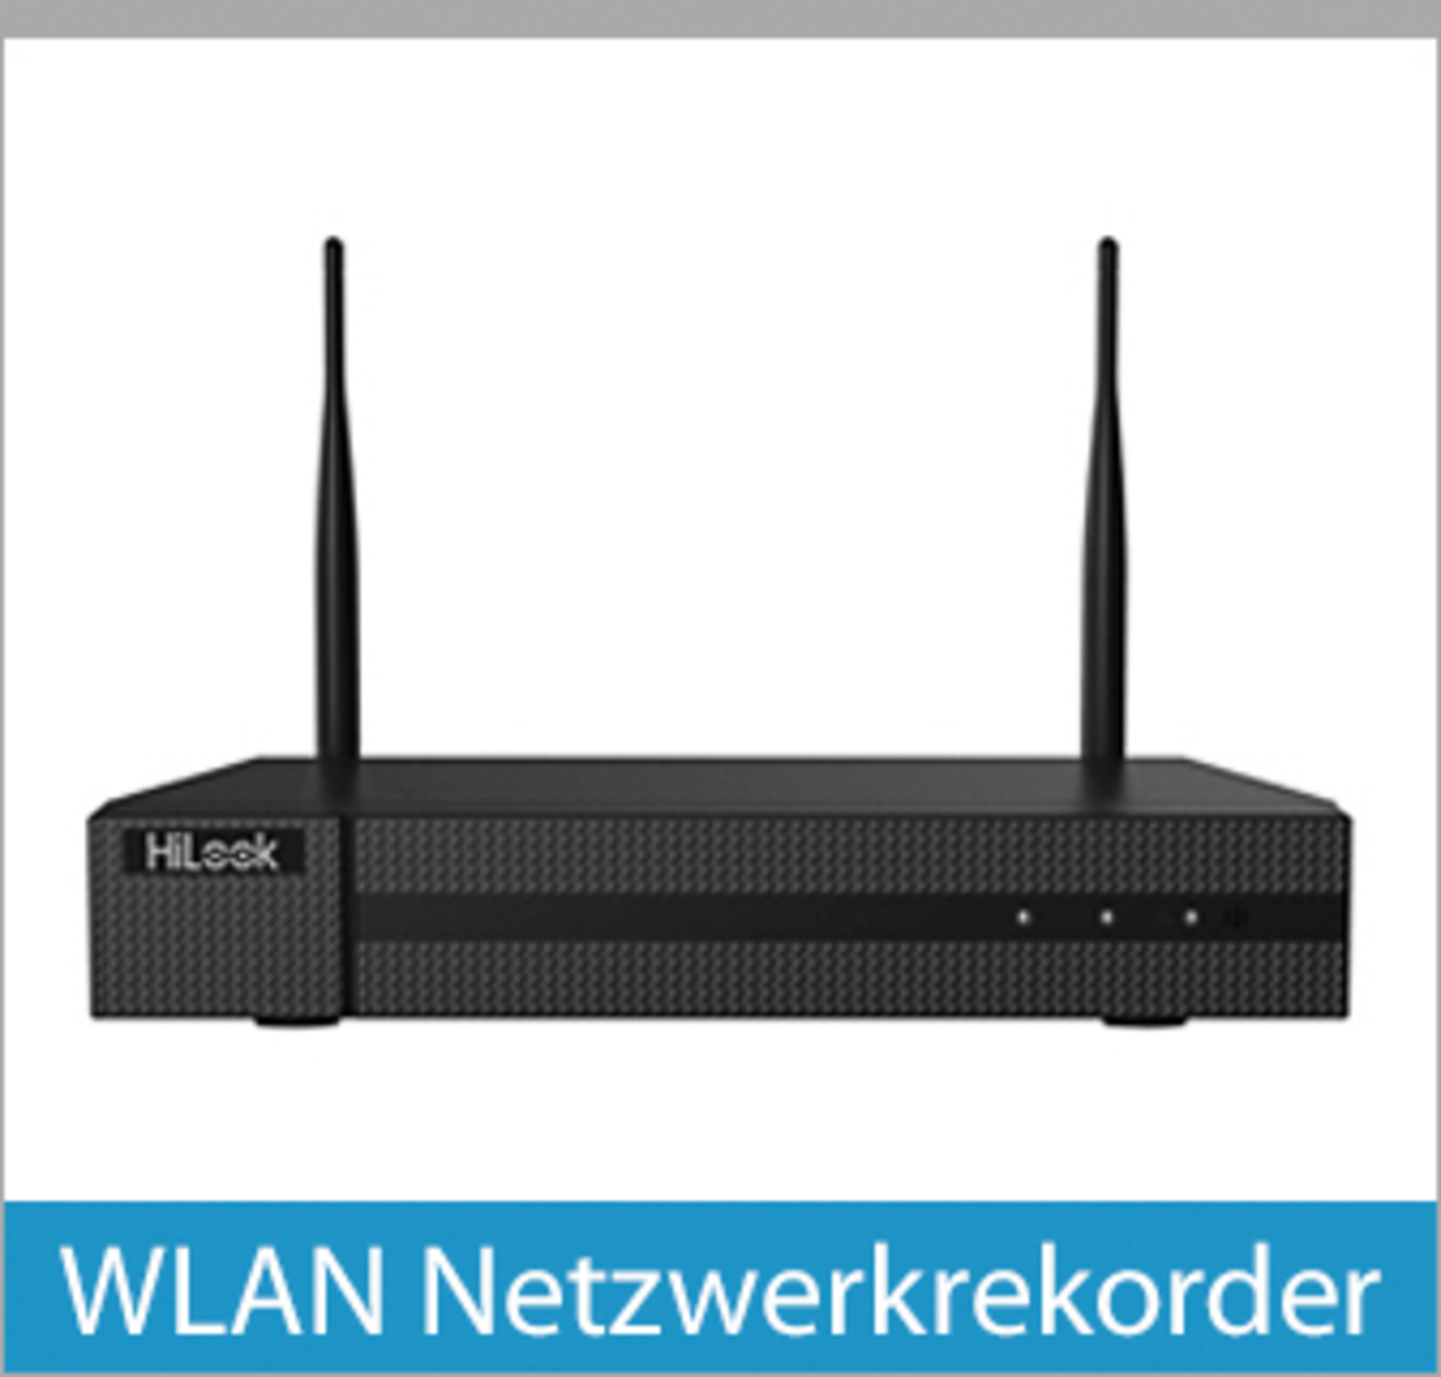 WLAN Netzwerkrekorder